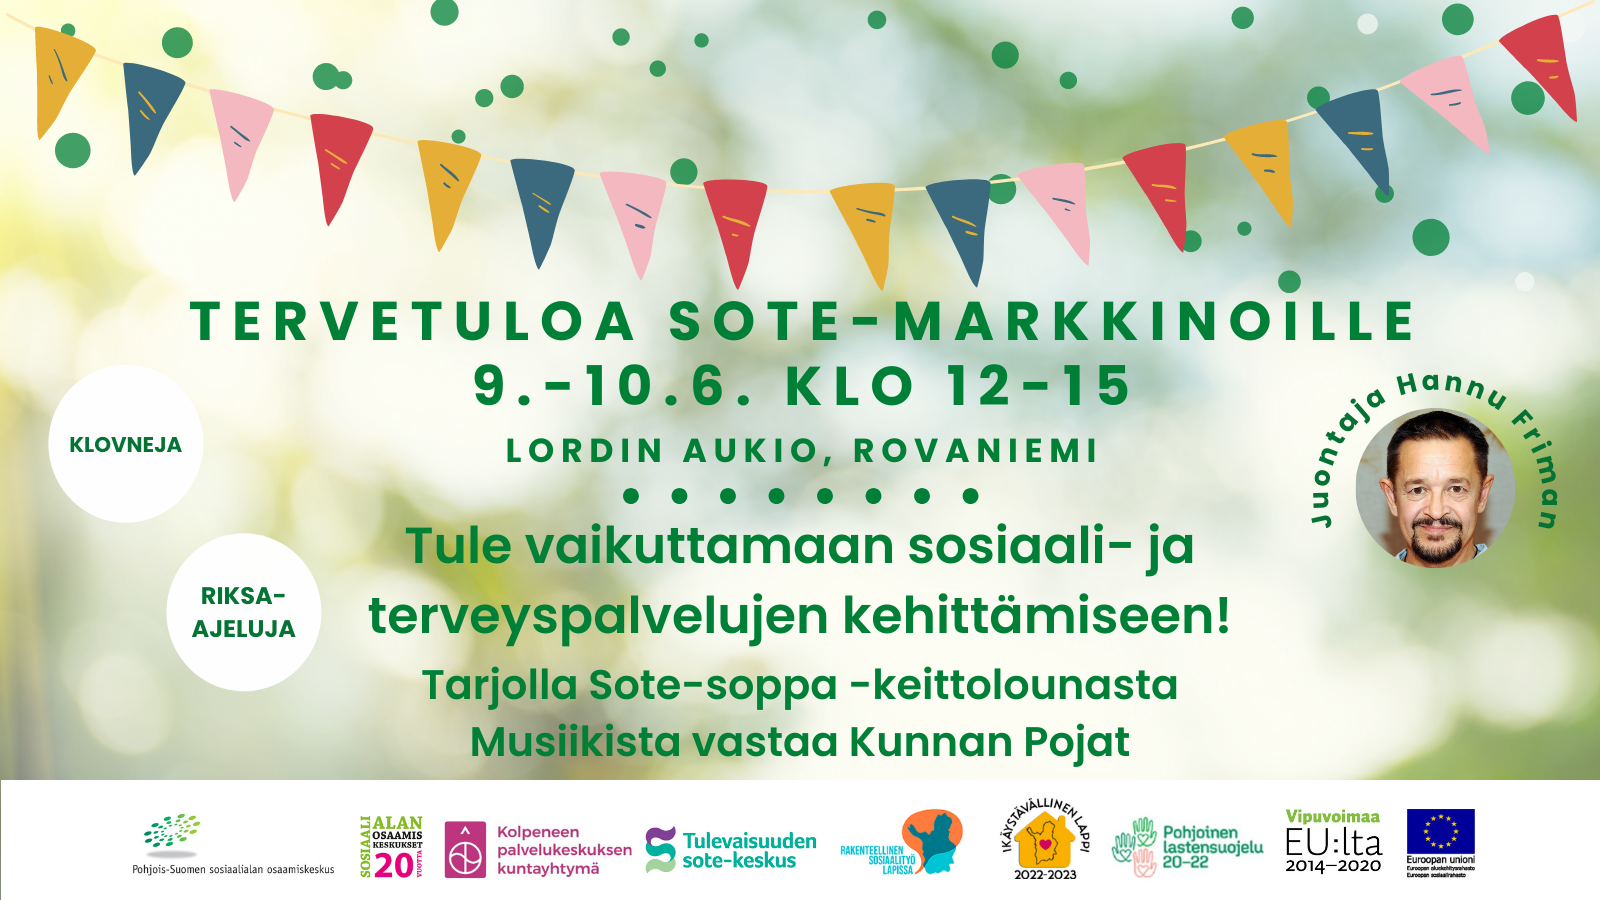 Sote-markkinat 9.-10.6. klo 12-15 Rovaniemen Lordin aukiolla. Tule vaikuttamaan sosiaali- ja terveyspalvelujen kehittämiseen! Tarjolla Sote-soppa -keittolounasta, riksa-ajeluja ja klovneja. Musiikista vastaa Kunnan Pojat ja juontajana Hannu Friman